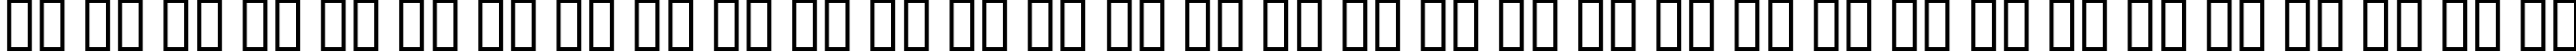 Пример написания русского алфавита шрифтом Scribblicious